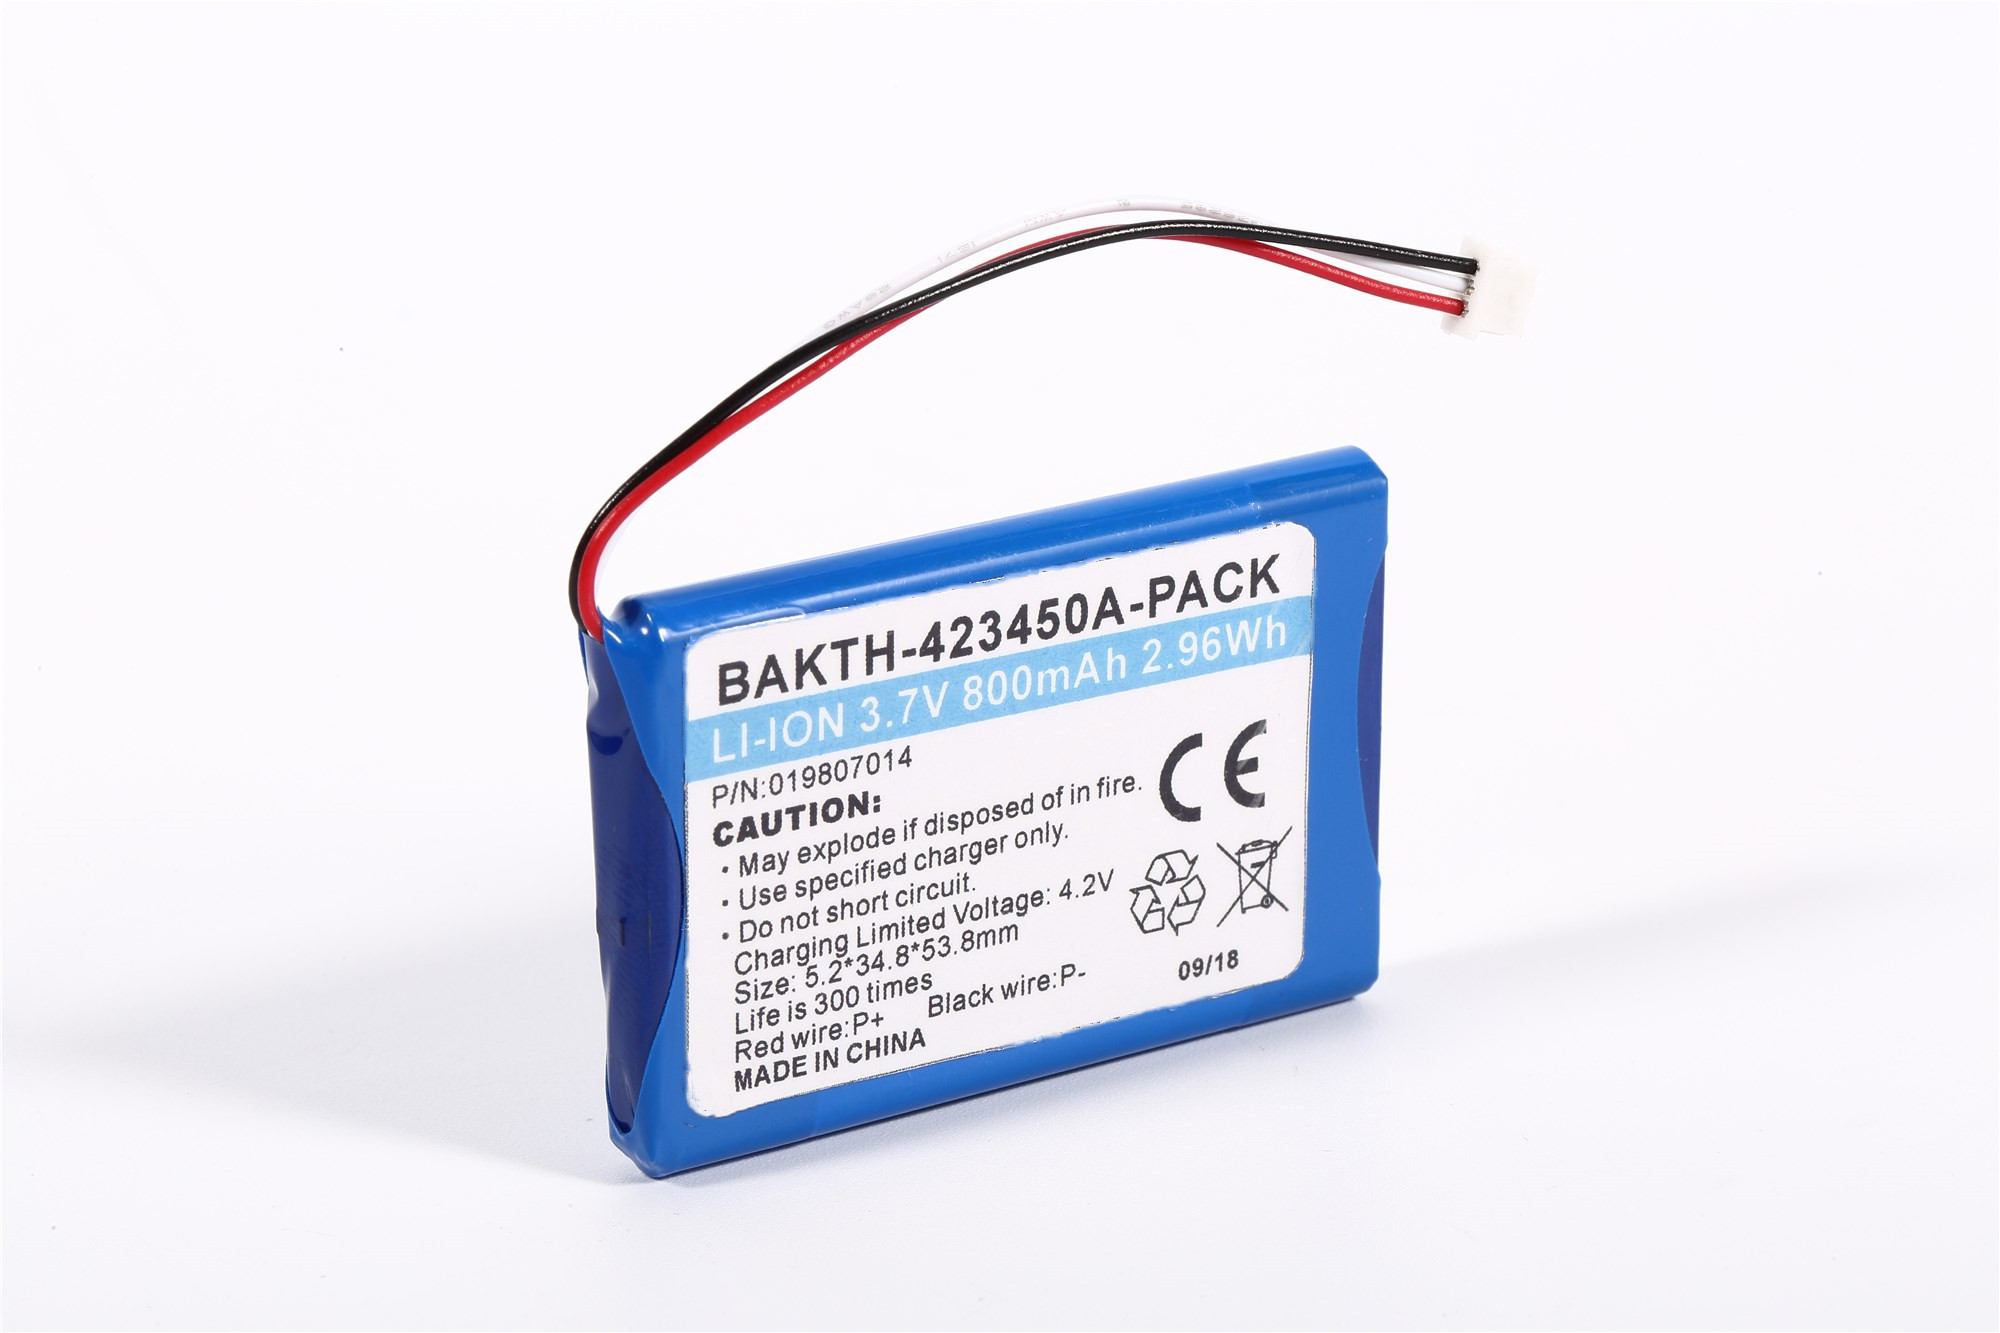 Lithium Ion Battery Pack BAKTH-423450-PACK 3.7V 800mAh 